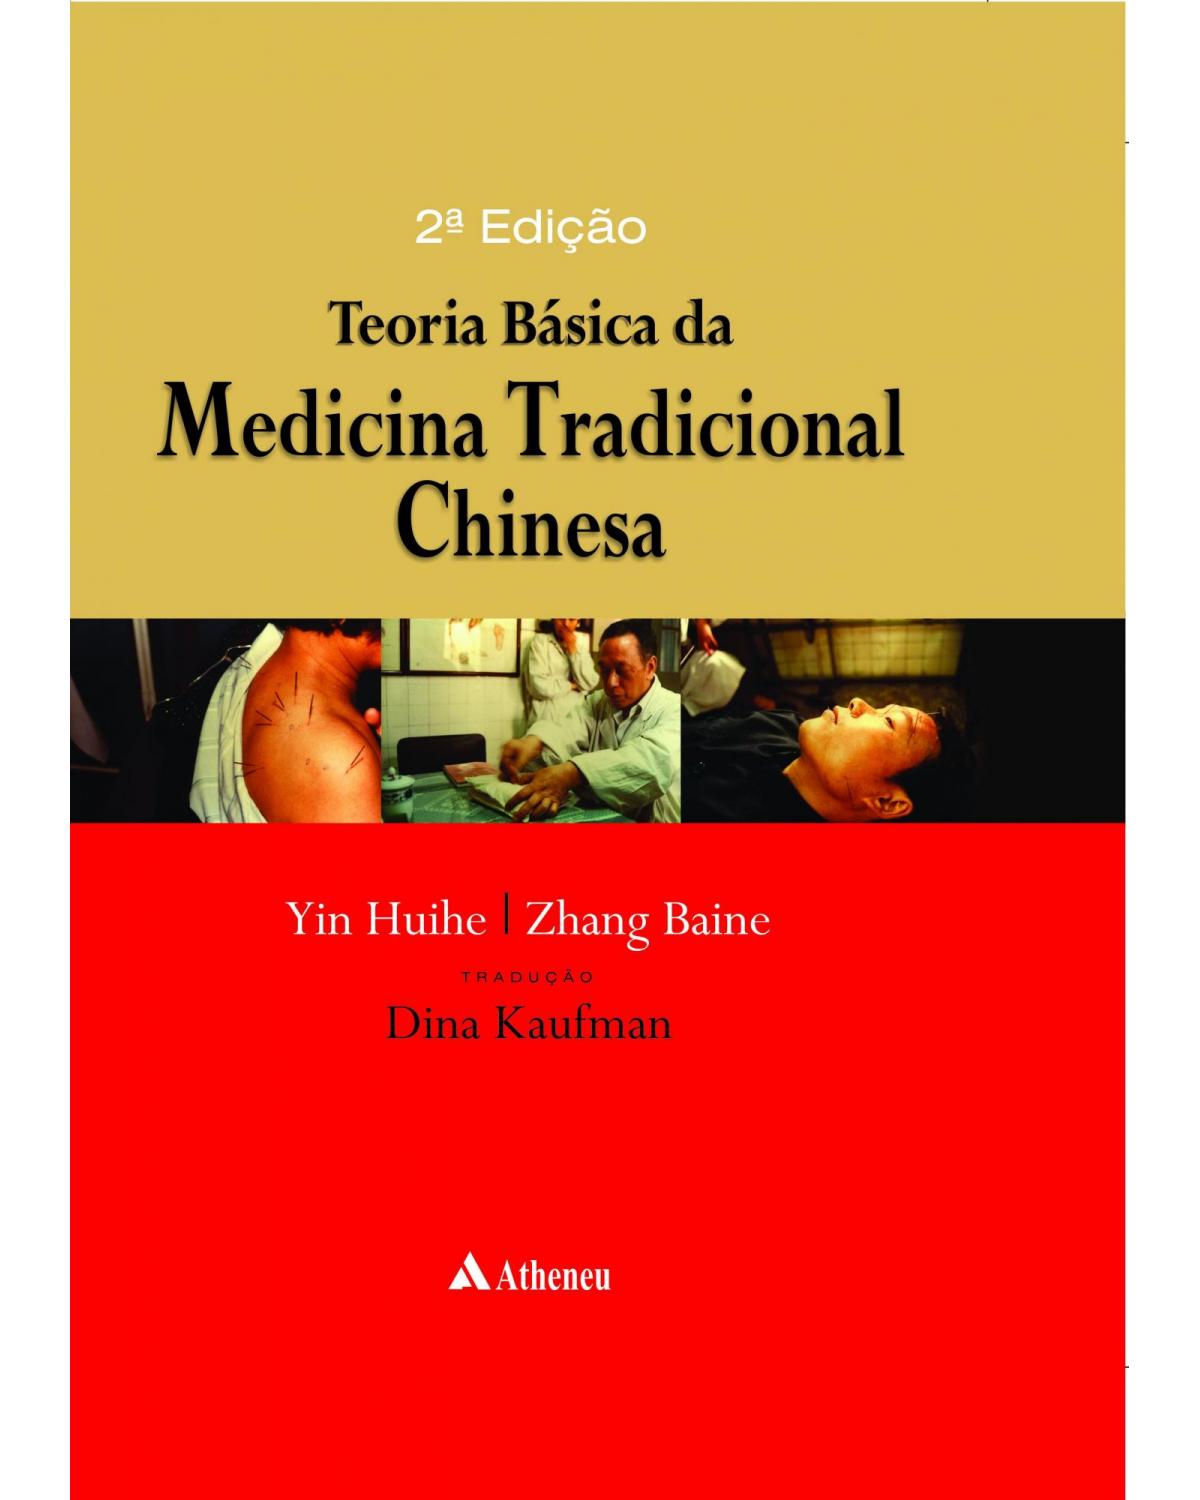 Teoria básica da medicina tradicional chinesa - 2ª Edição | 2012